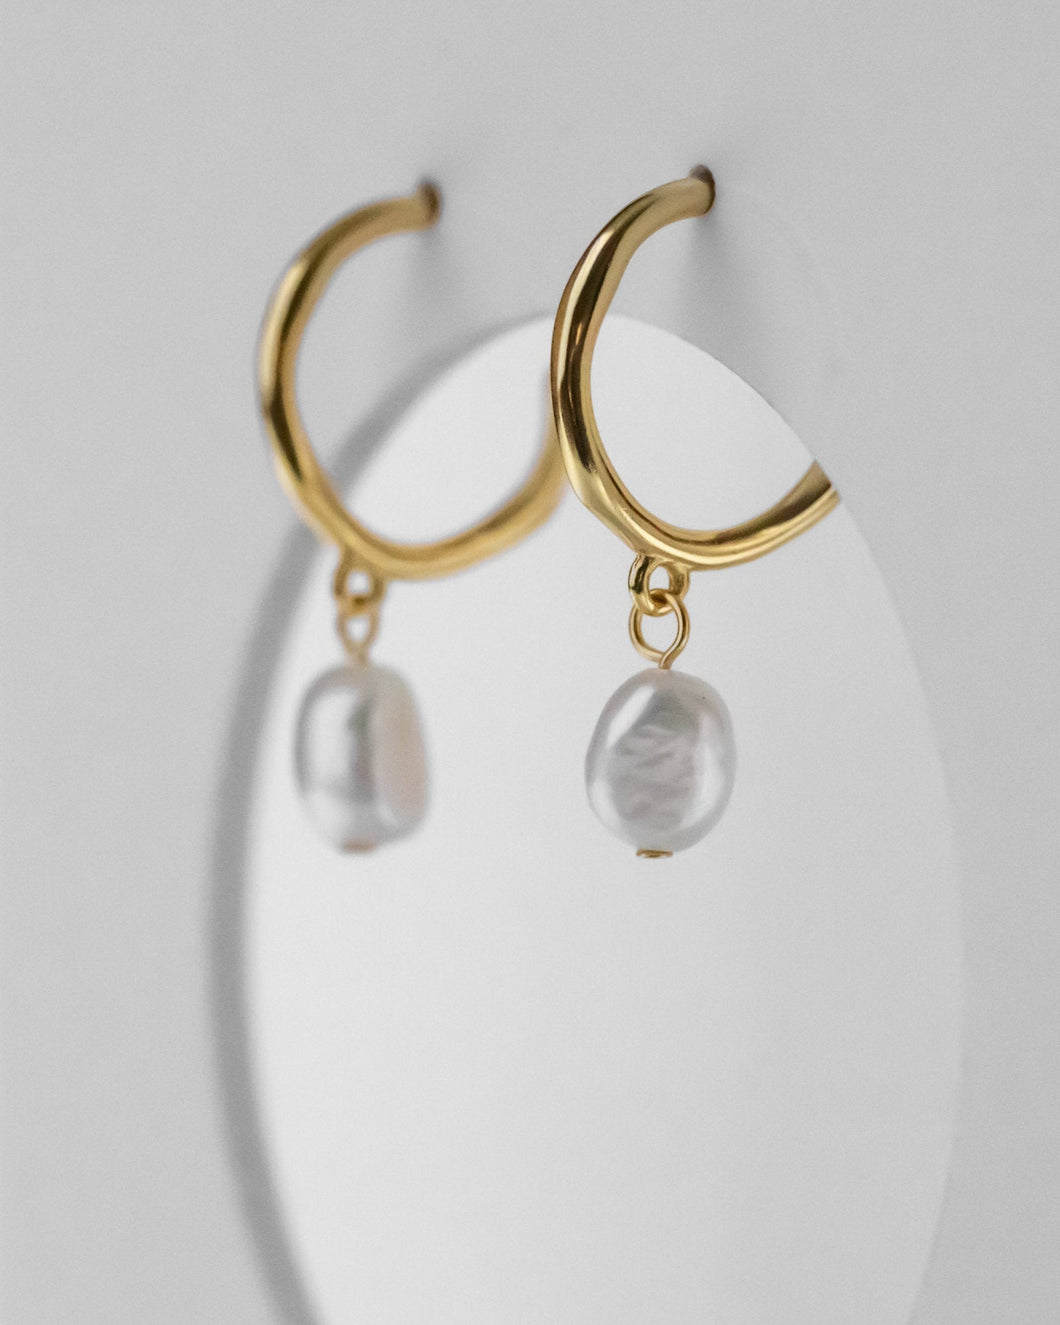 Pearl dangle hoops, dangling baroque pearl earrings, genuine pearls, c hoops, vintage gold hoops, bridal, wedding, bridesmaid, 925 silver